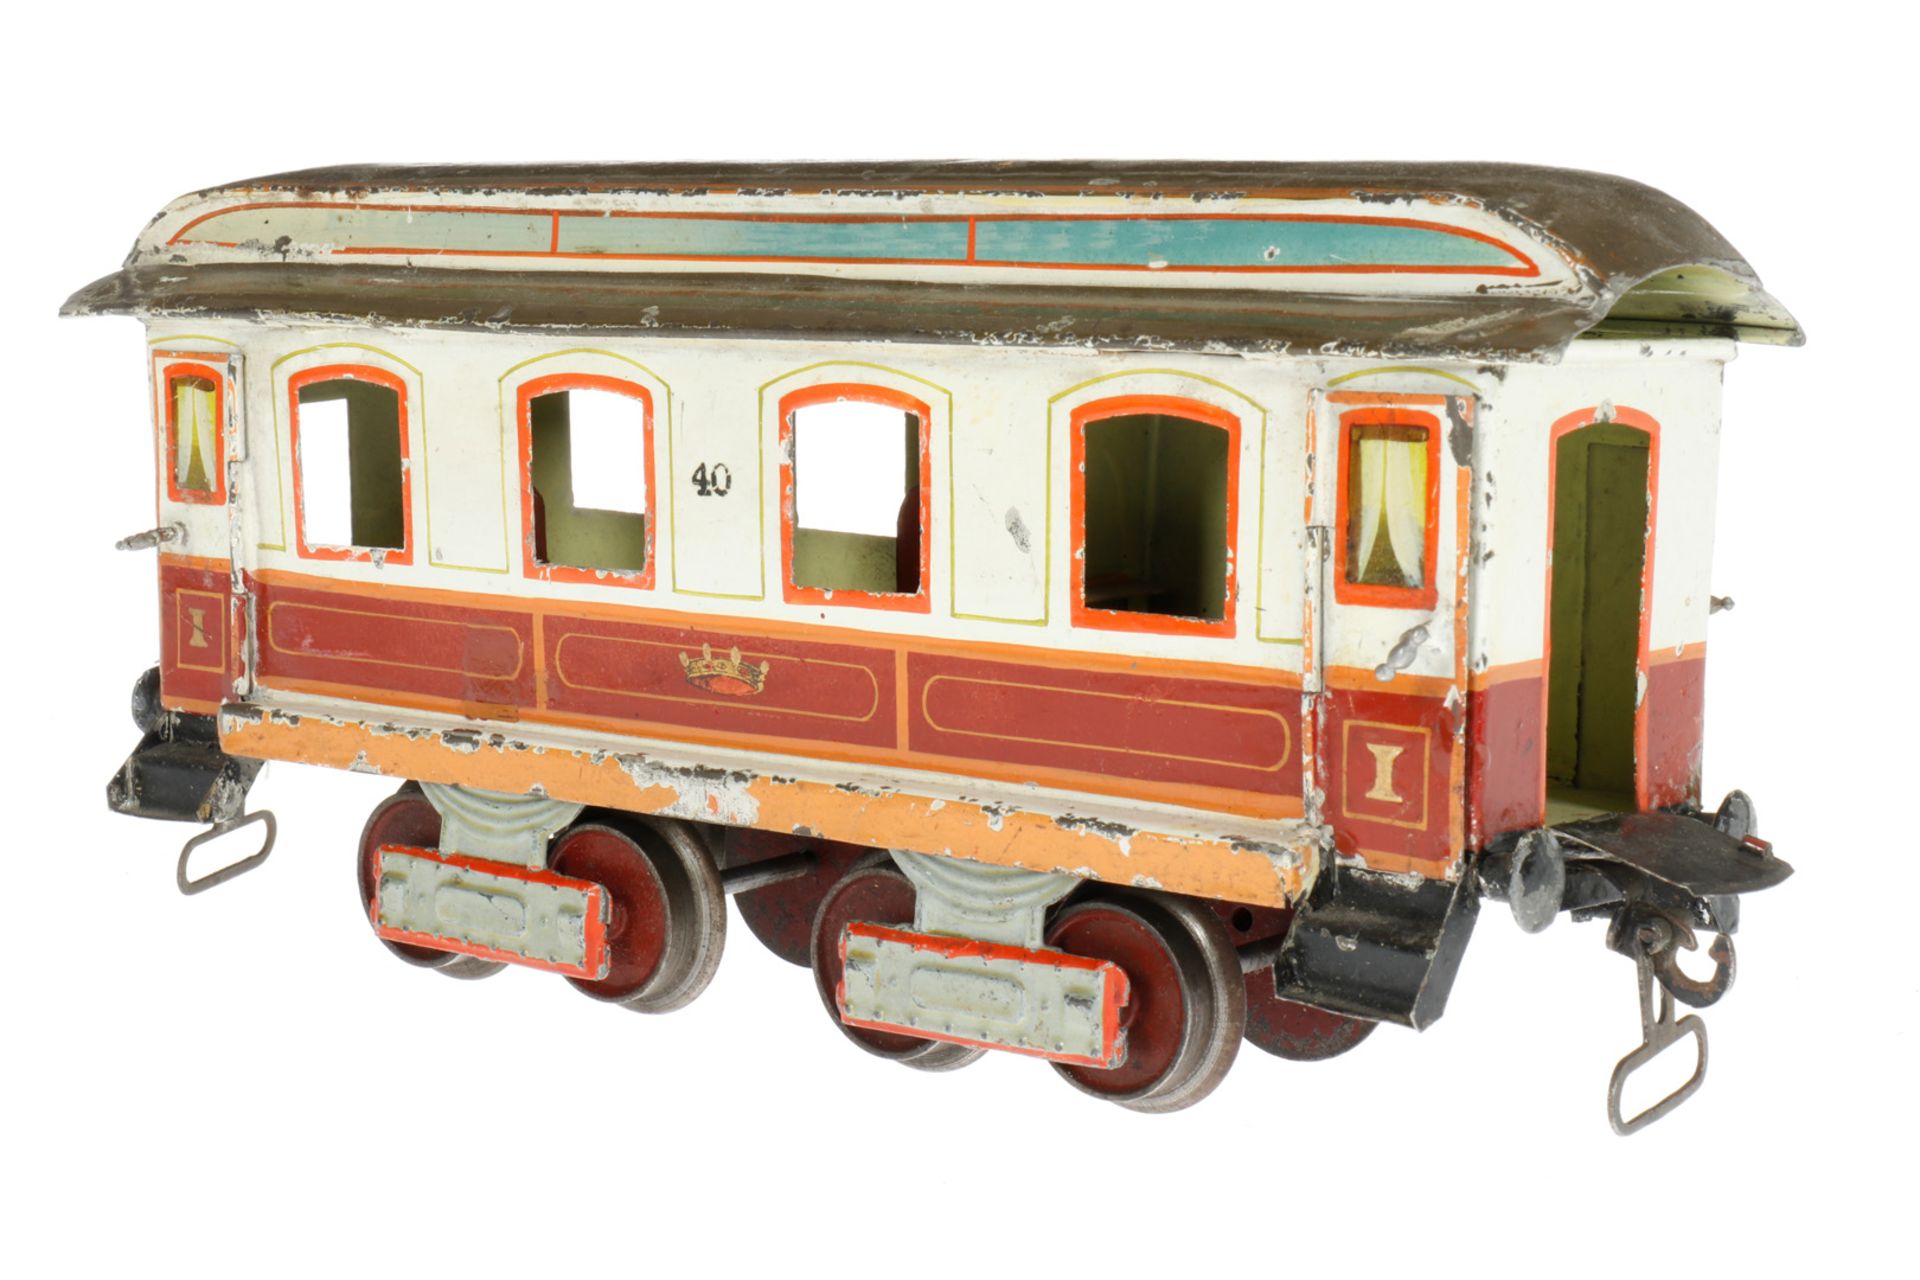 Märklin Schlafwagen “40“ 1843 K, S 1, uralt, braun/weiß, HL, mit Inneneinrichtung (Betten und - Bild 3 aus 6